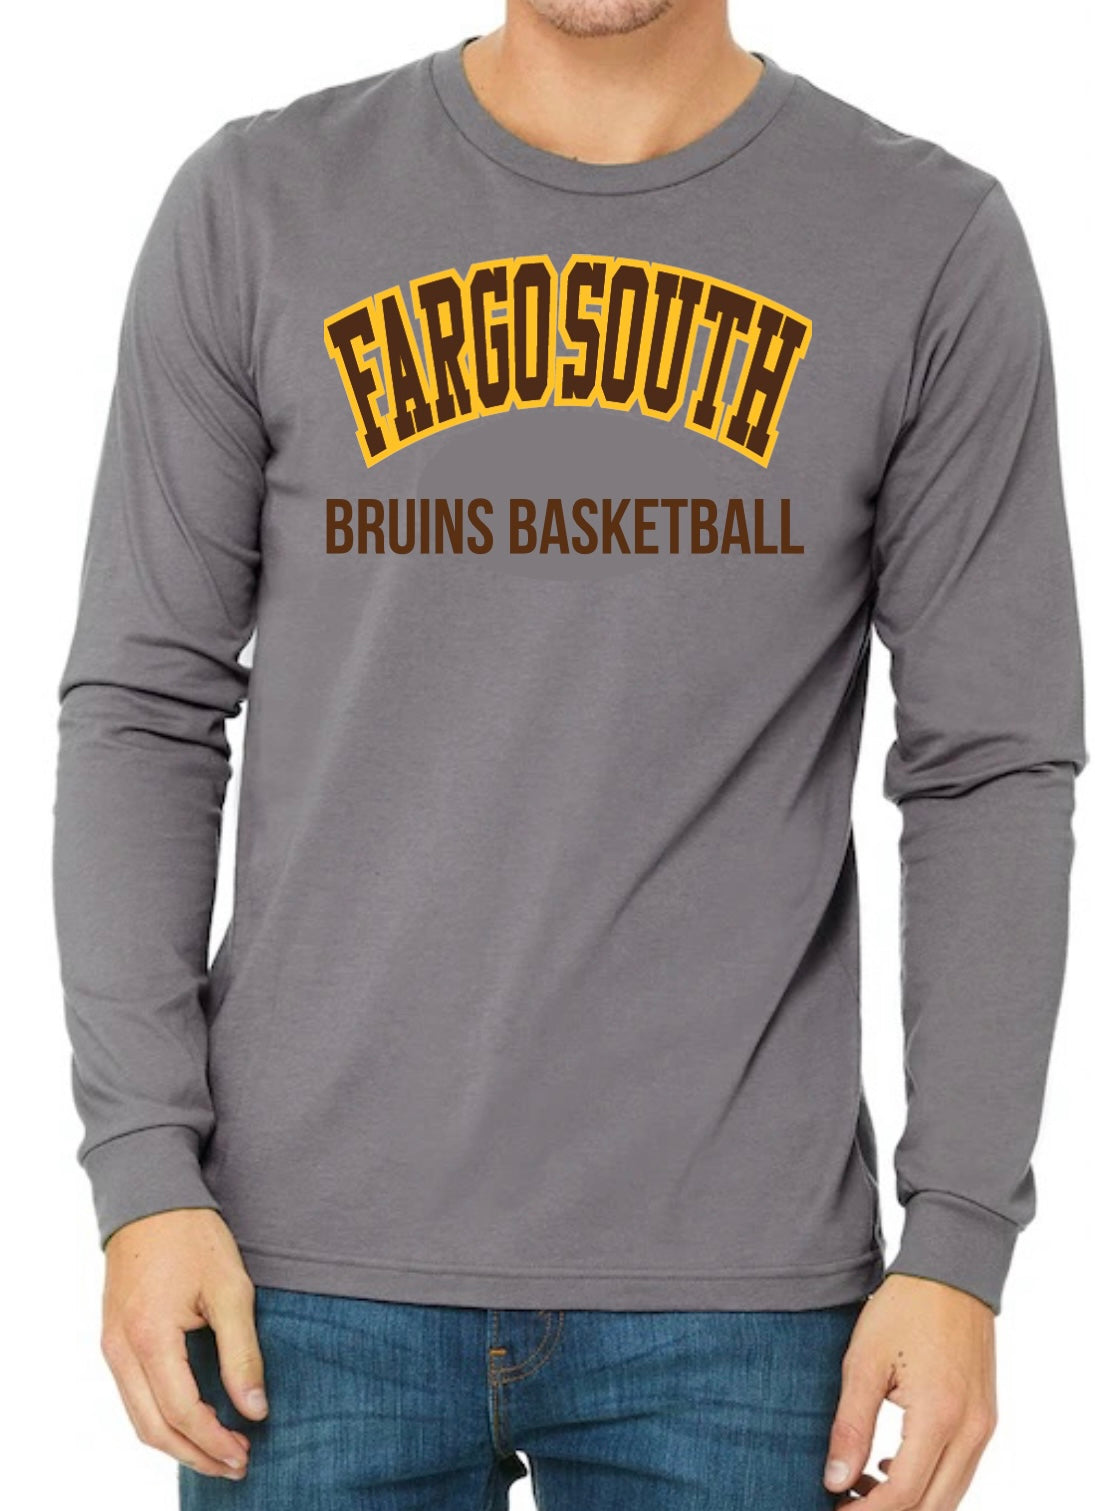 Fargo South Basketball